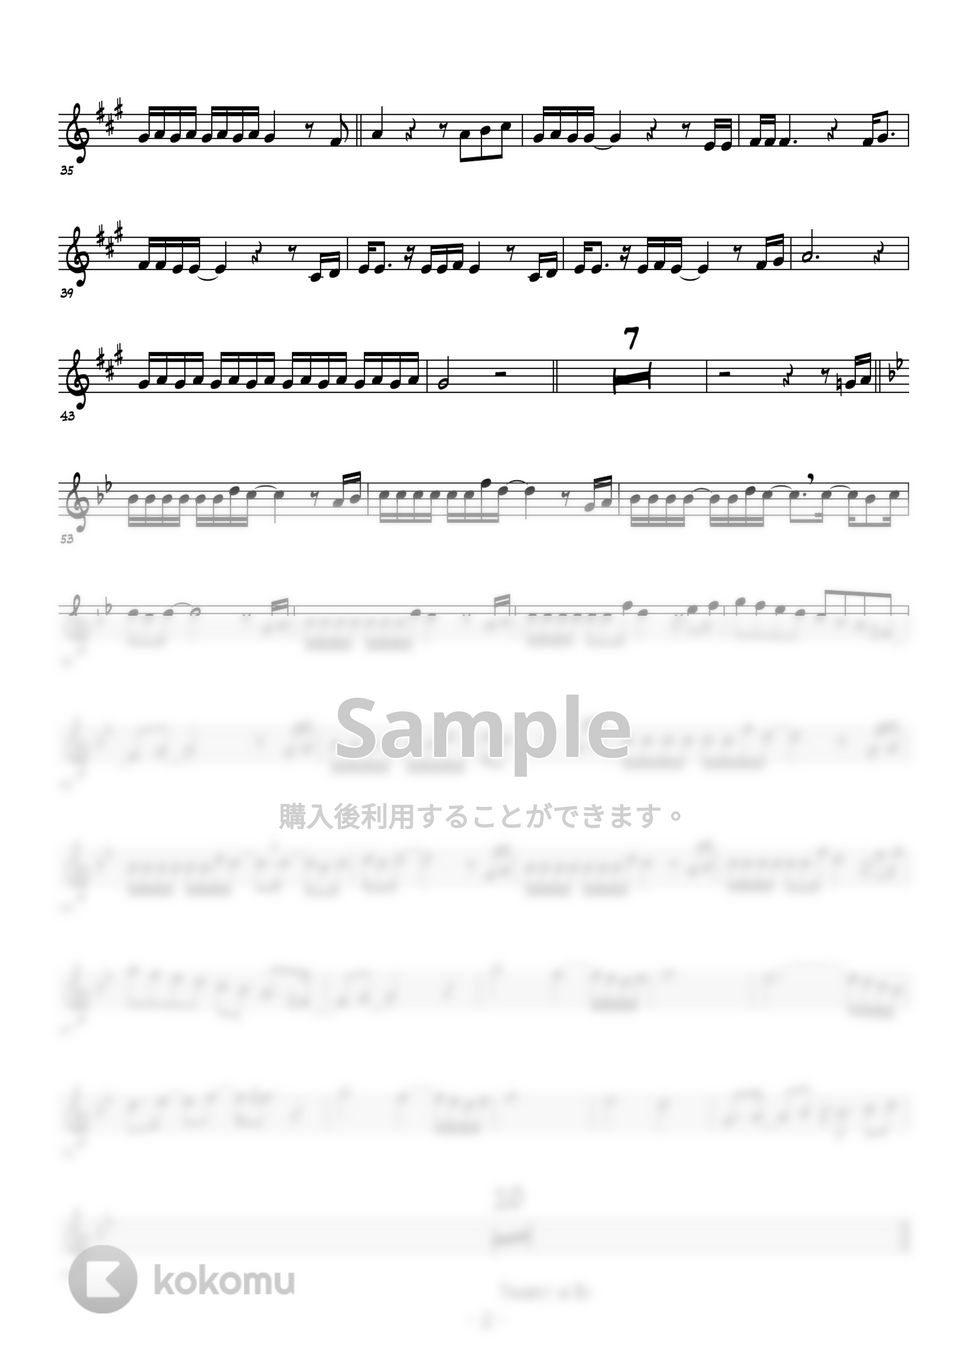 松崎しげる - 愛のメモリー (メロディー譜面) by 高田将利